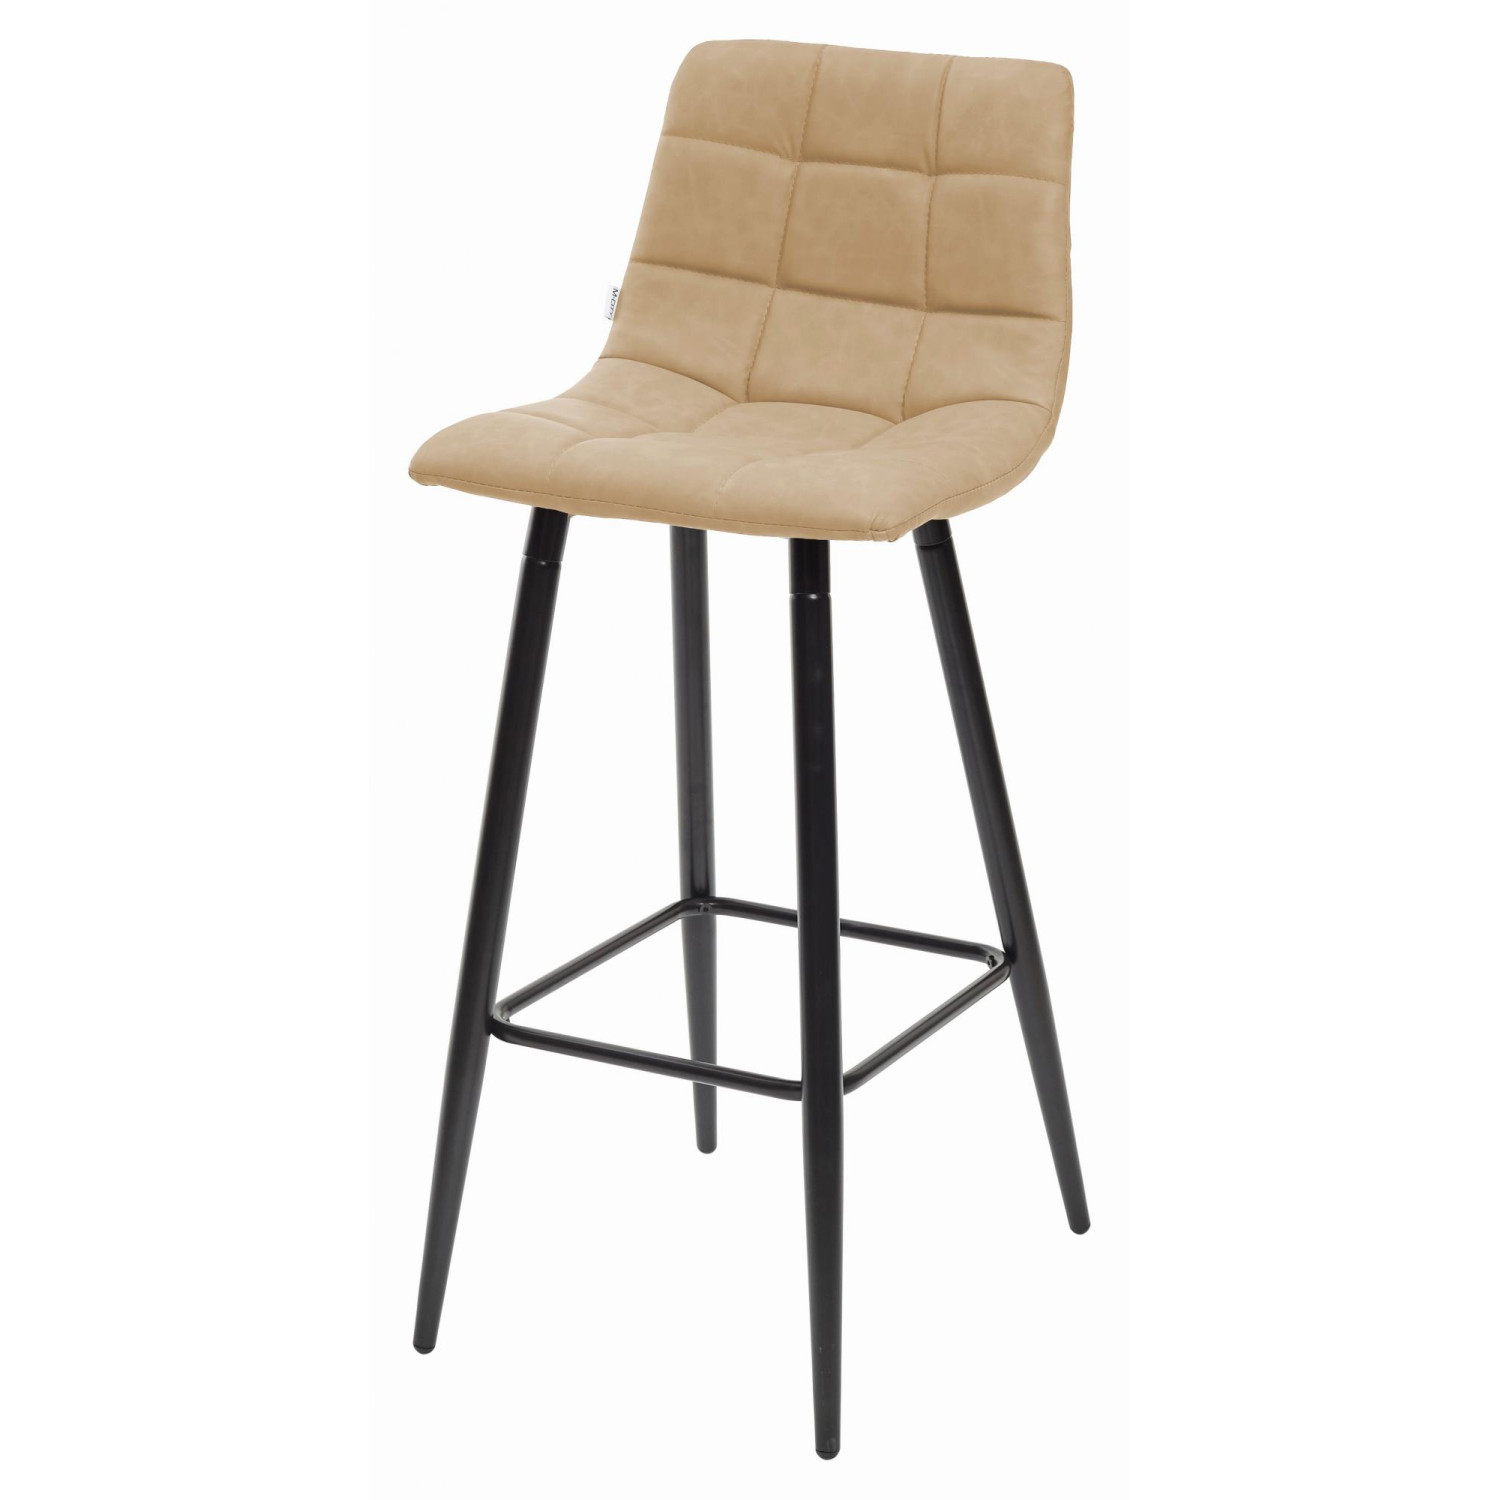 Барные стулья Барный стул SPICE RU-16 бежевый винтаж, PU М-City фото 1 — New Style of Furniture